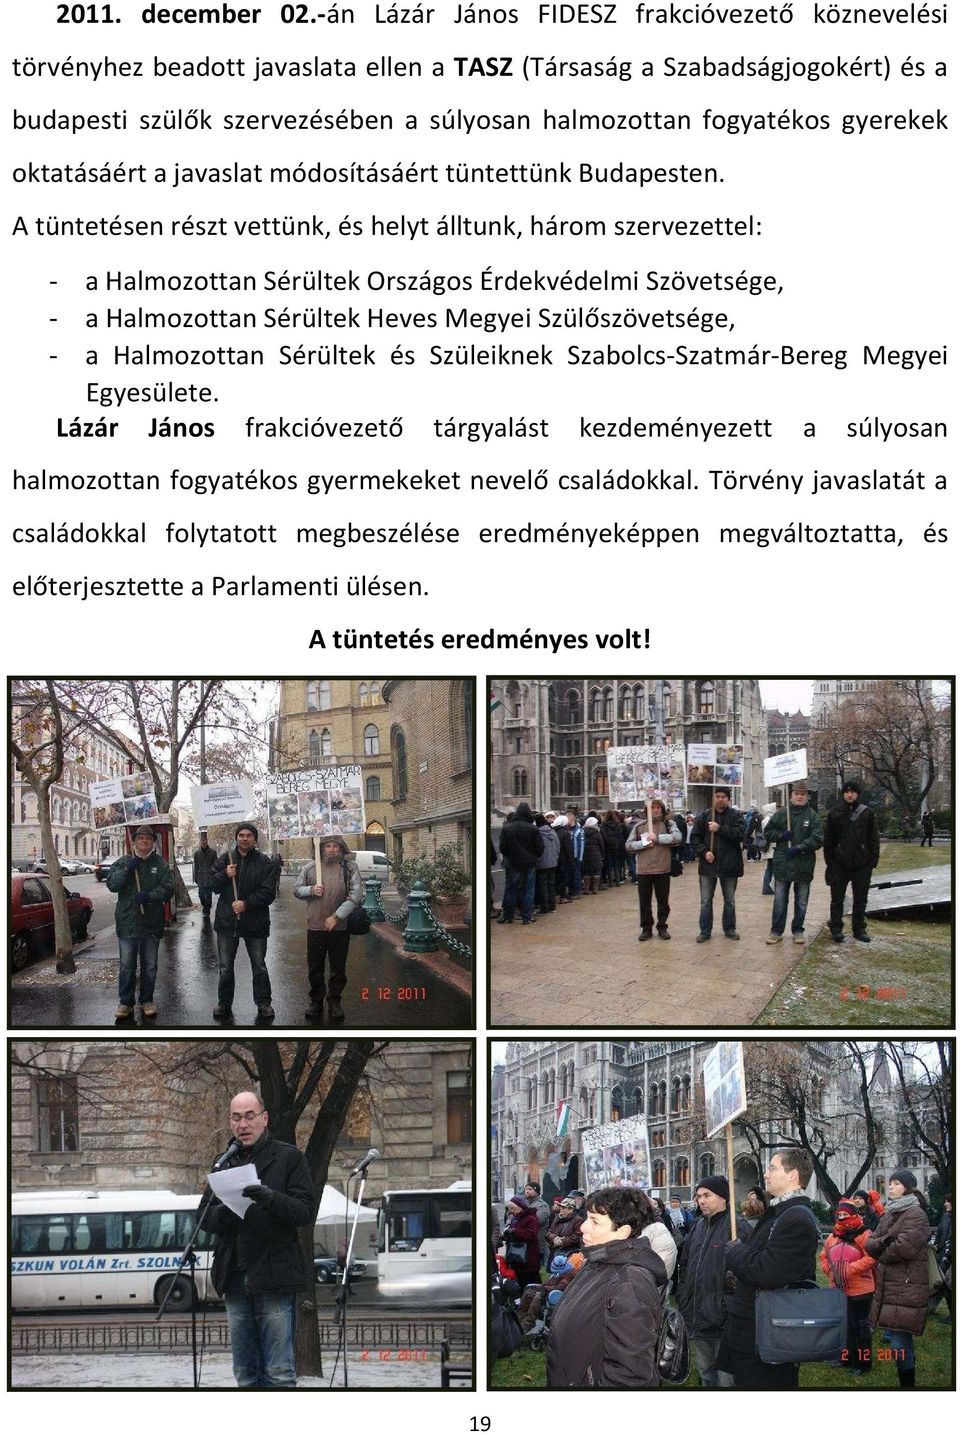 gyerekek oktatásáért a javaslat módosításáért tüntettünk Budapesten.